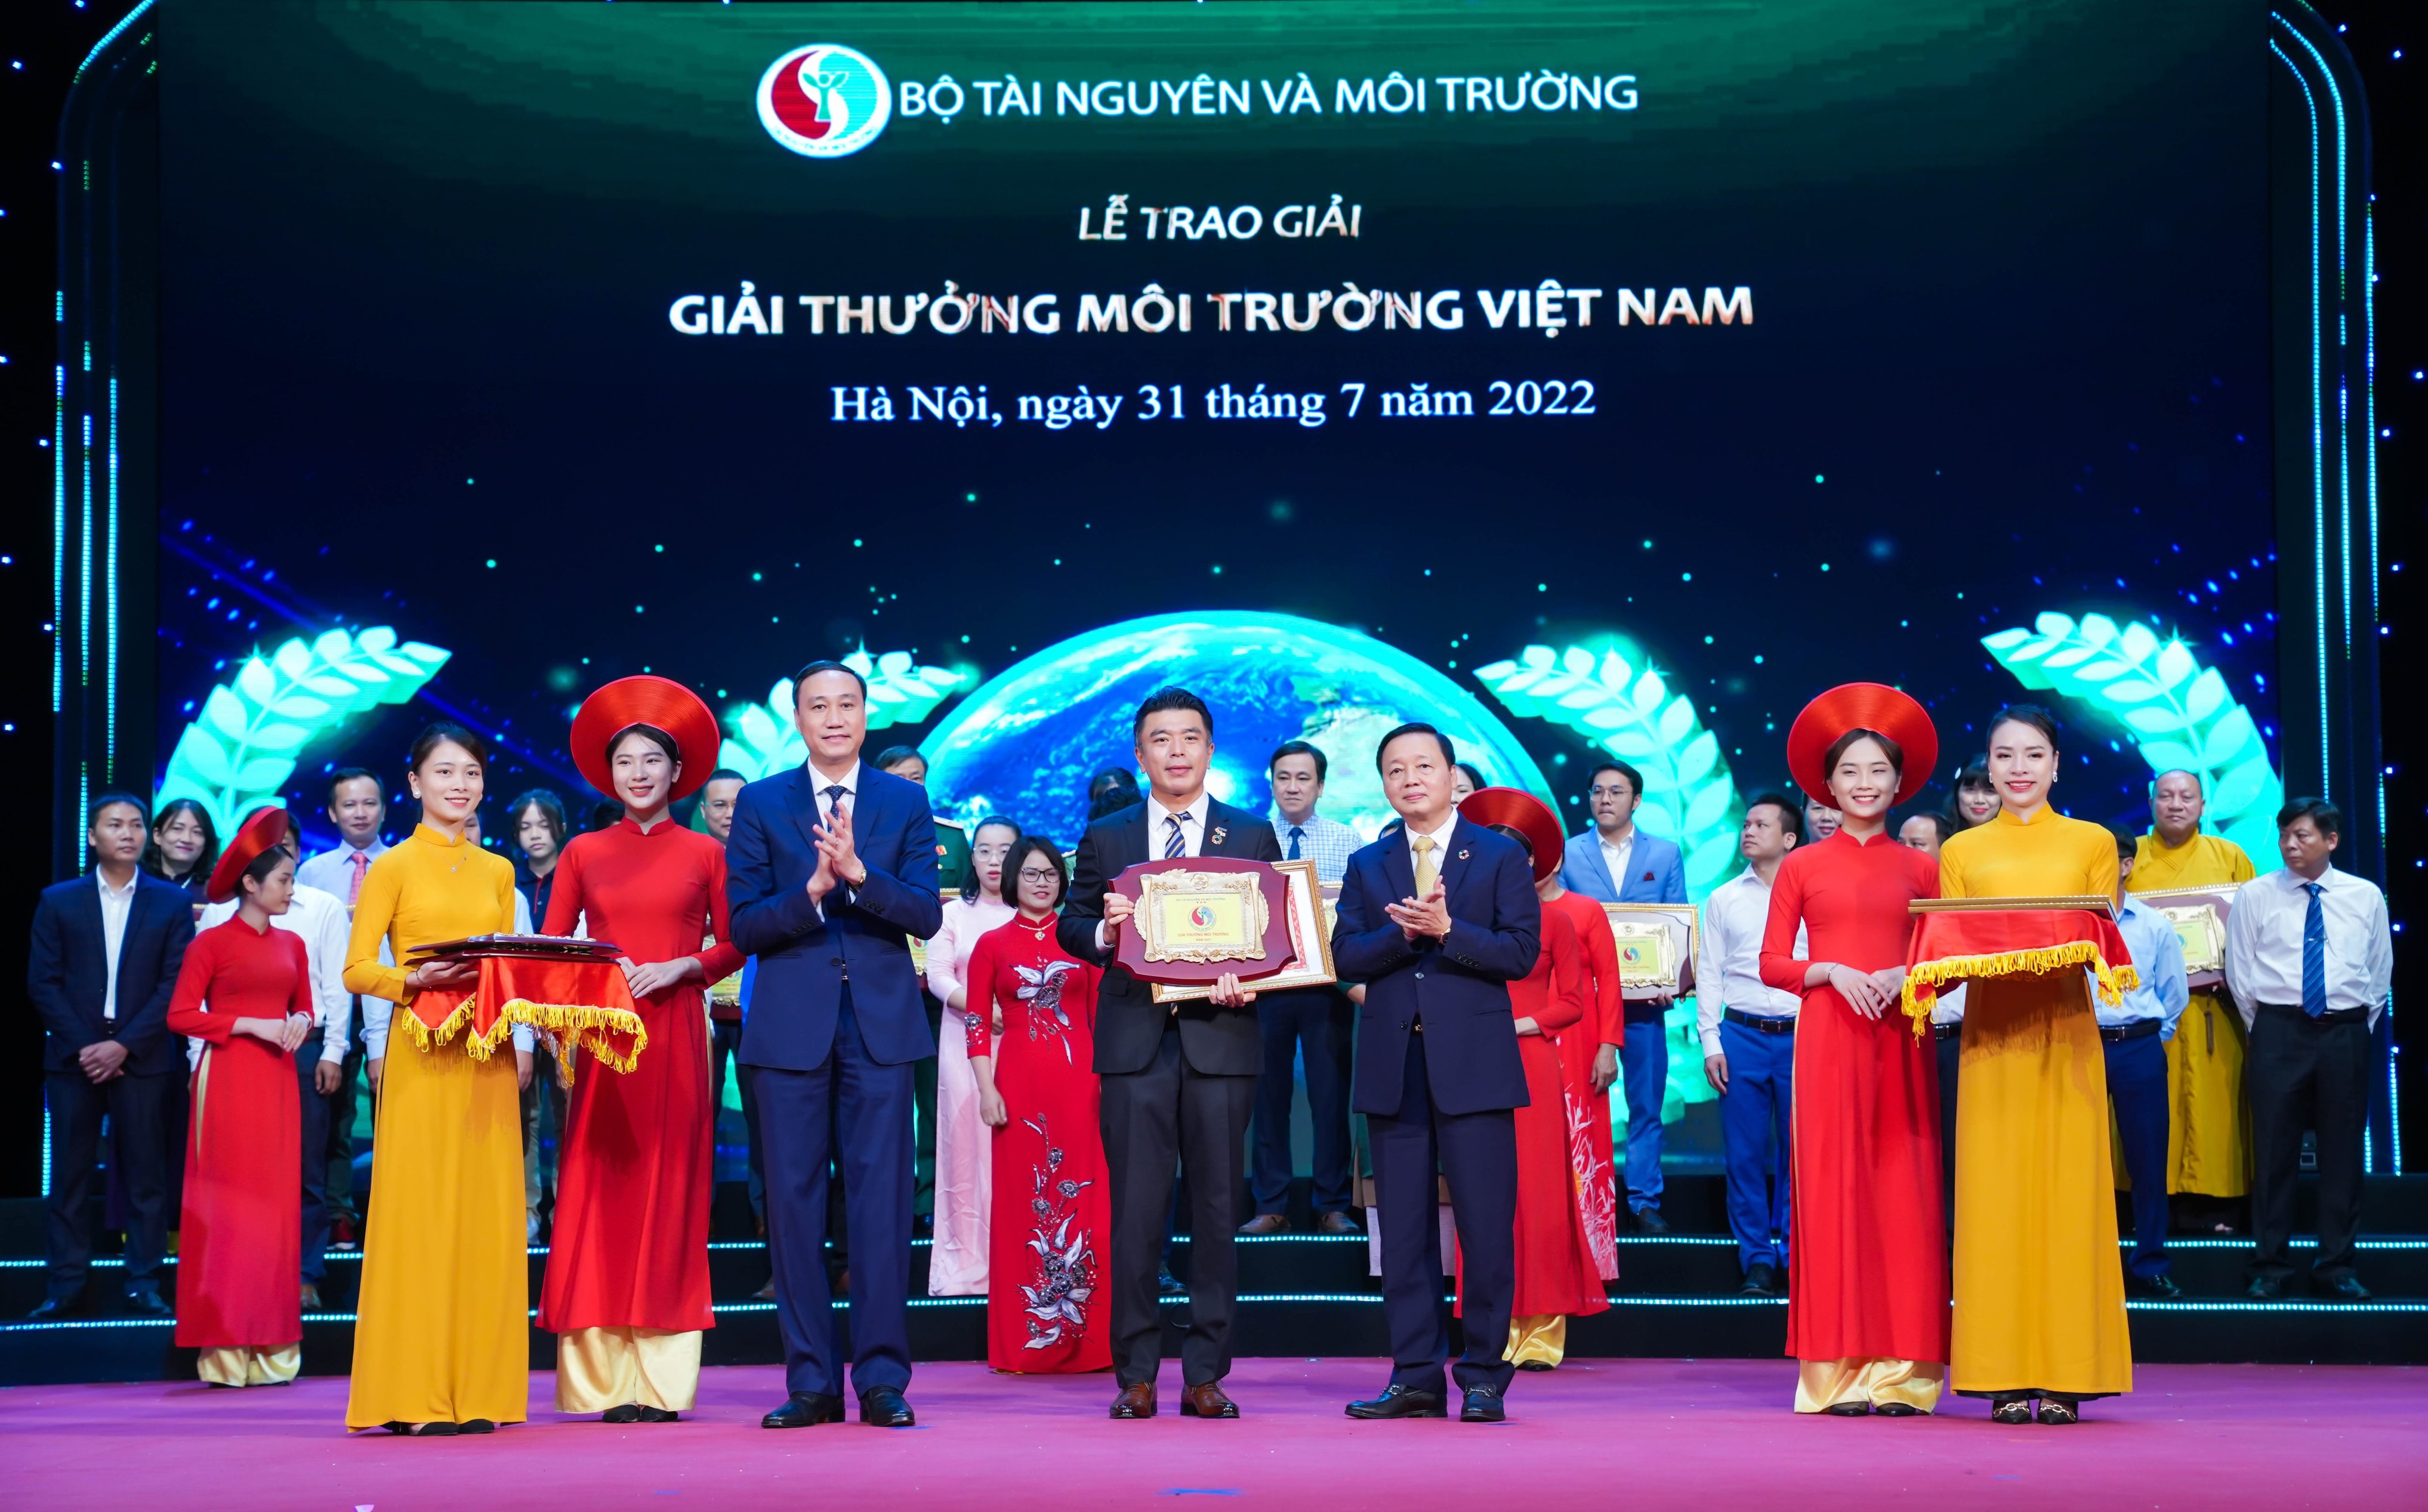 Panasonic lần thứ 3 được vinh danh với Giải thưởng Môi trường Việt Nam vì những nỗ lực và đóng góp đáng ghi nhận cho bảo vệ môi trường